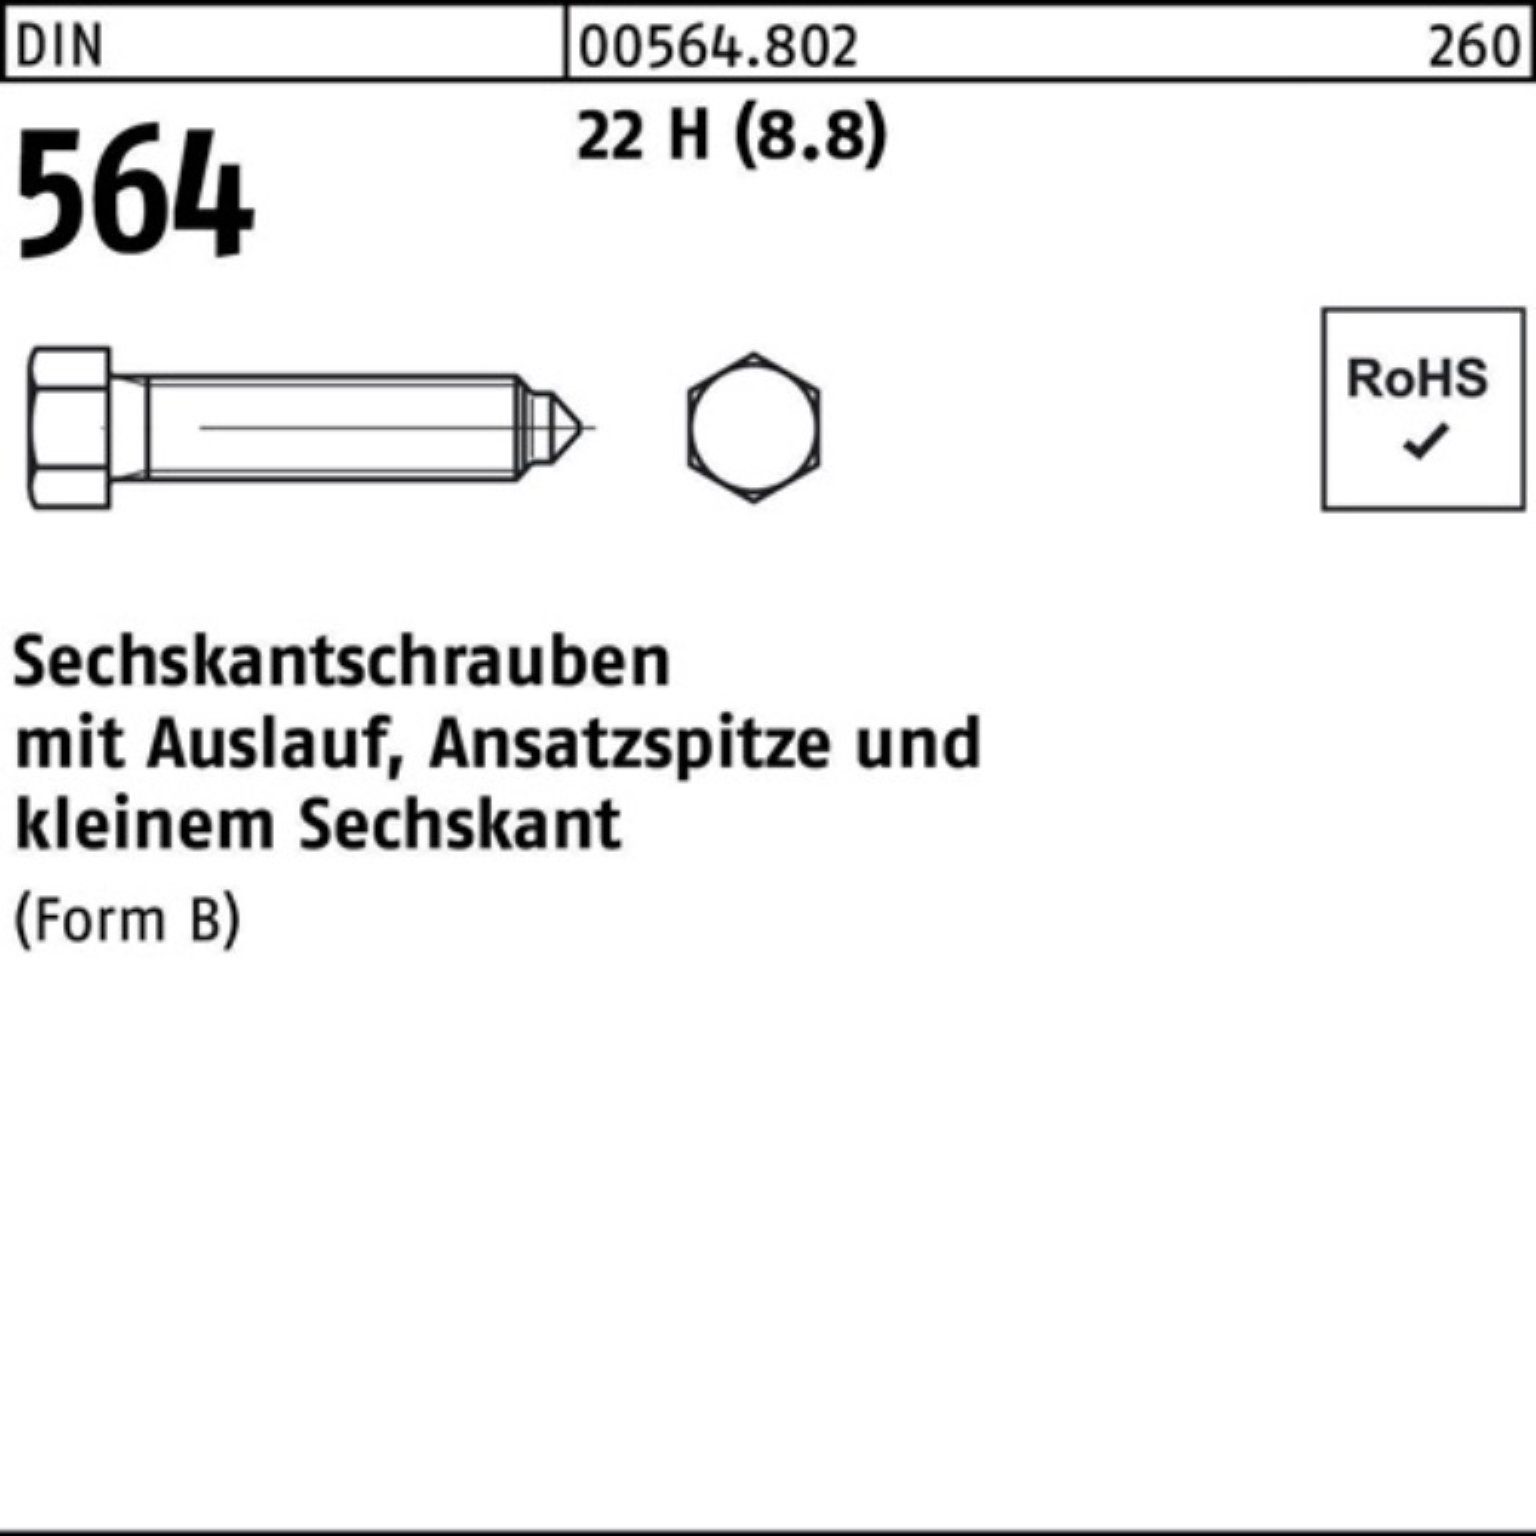 Reyher Pack Ansatzspitze/Auslauf Sechskantschraube Sechskantschraube 100 564 2 DIN 24x BM 100er